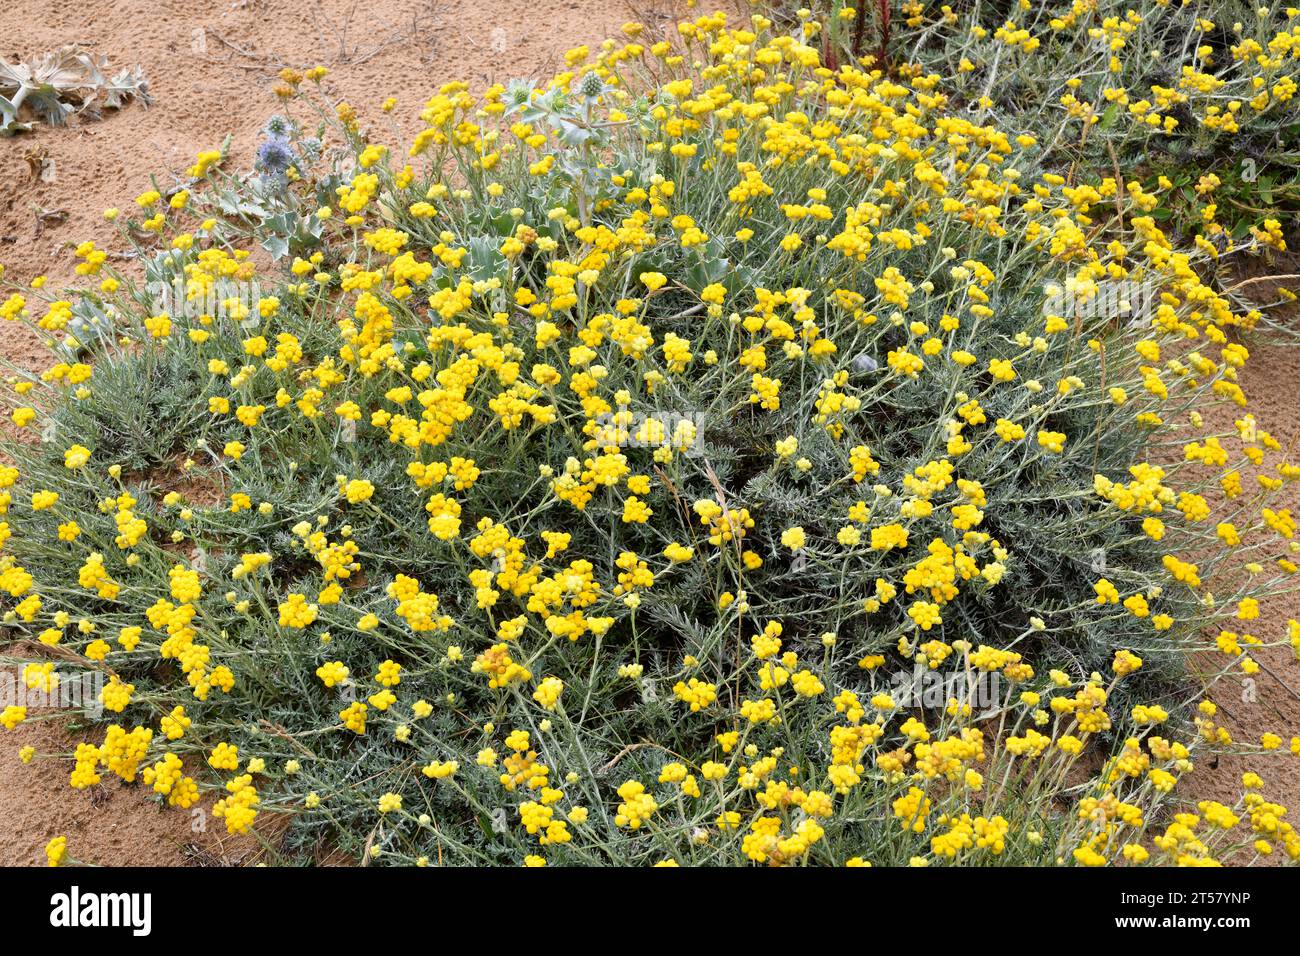 Il fiocco di fragola mediterraneo (Helichrysum stoechas) è una pianta annuale o perenne originaria delle coste sabbiose del bacino del Mediterraneo. Questa foto mi è stata fatta Foto Stock